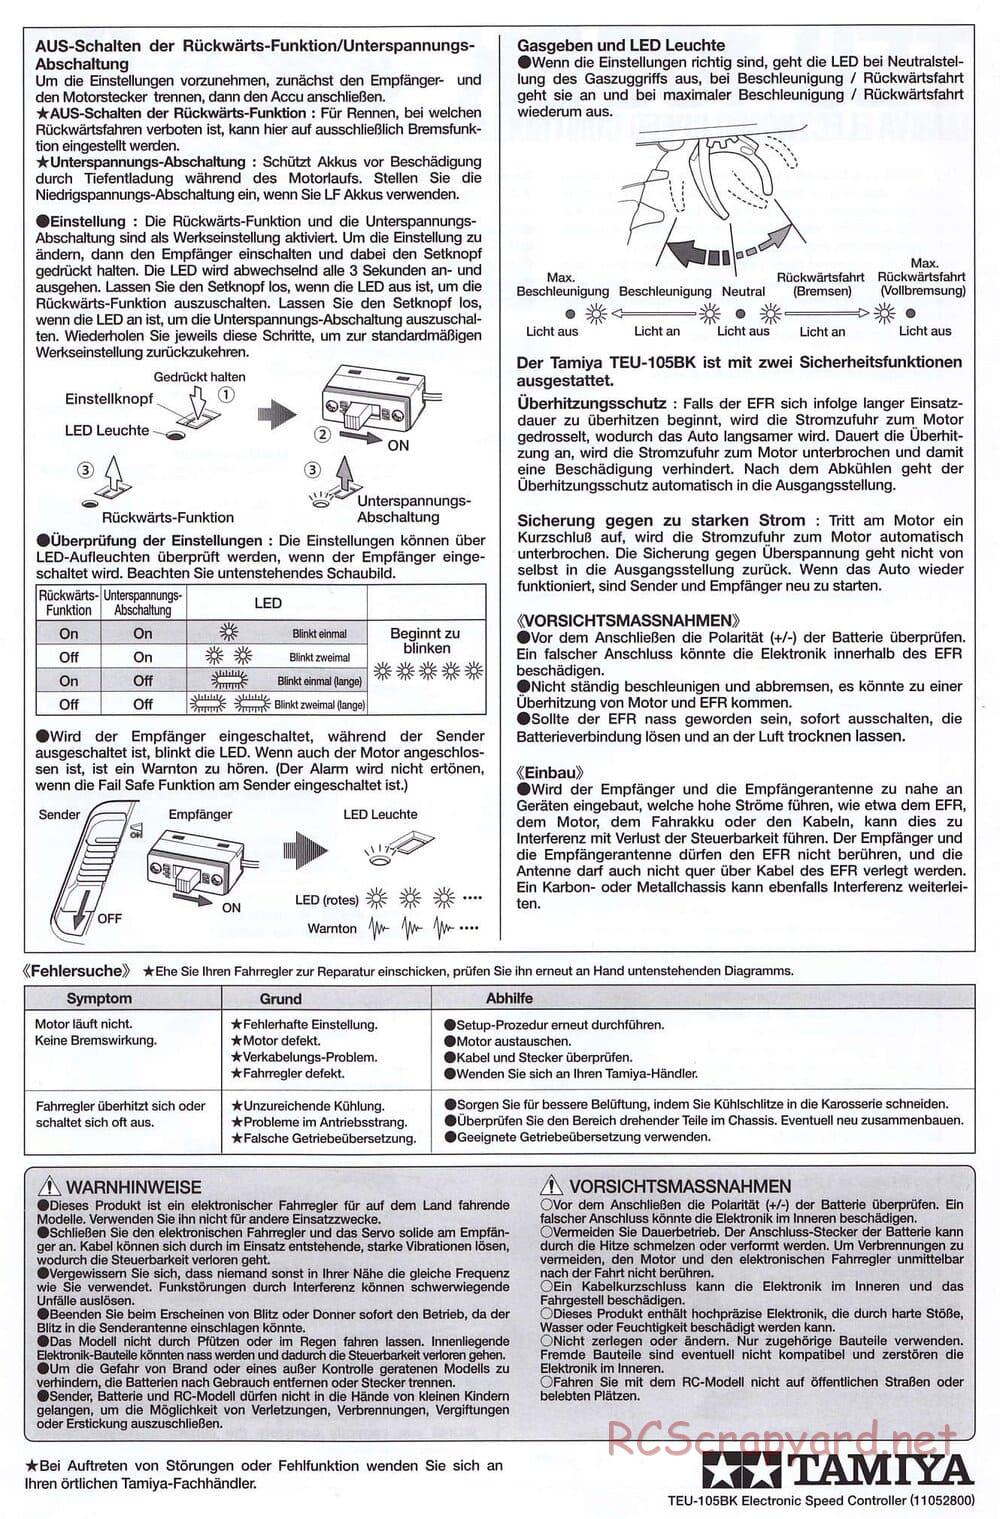 Tamiya - SA TT-02 ESC - Manual - Page 2